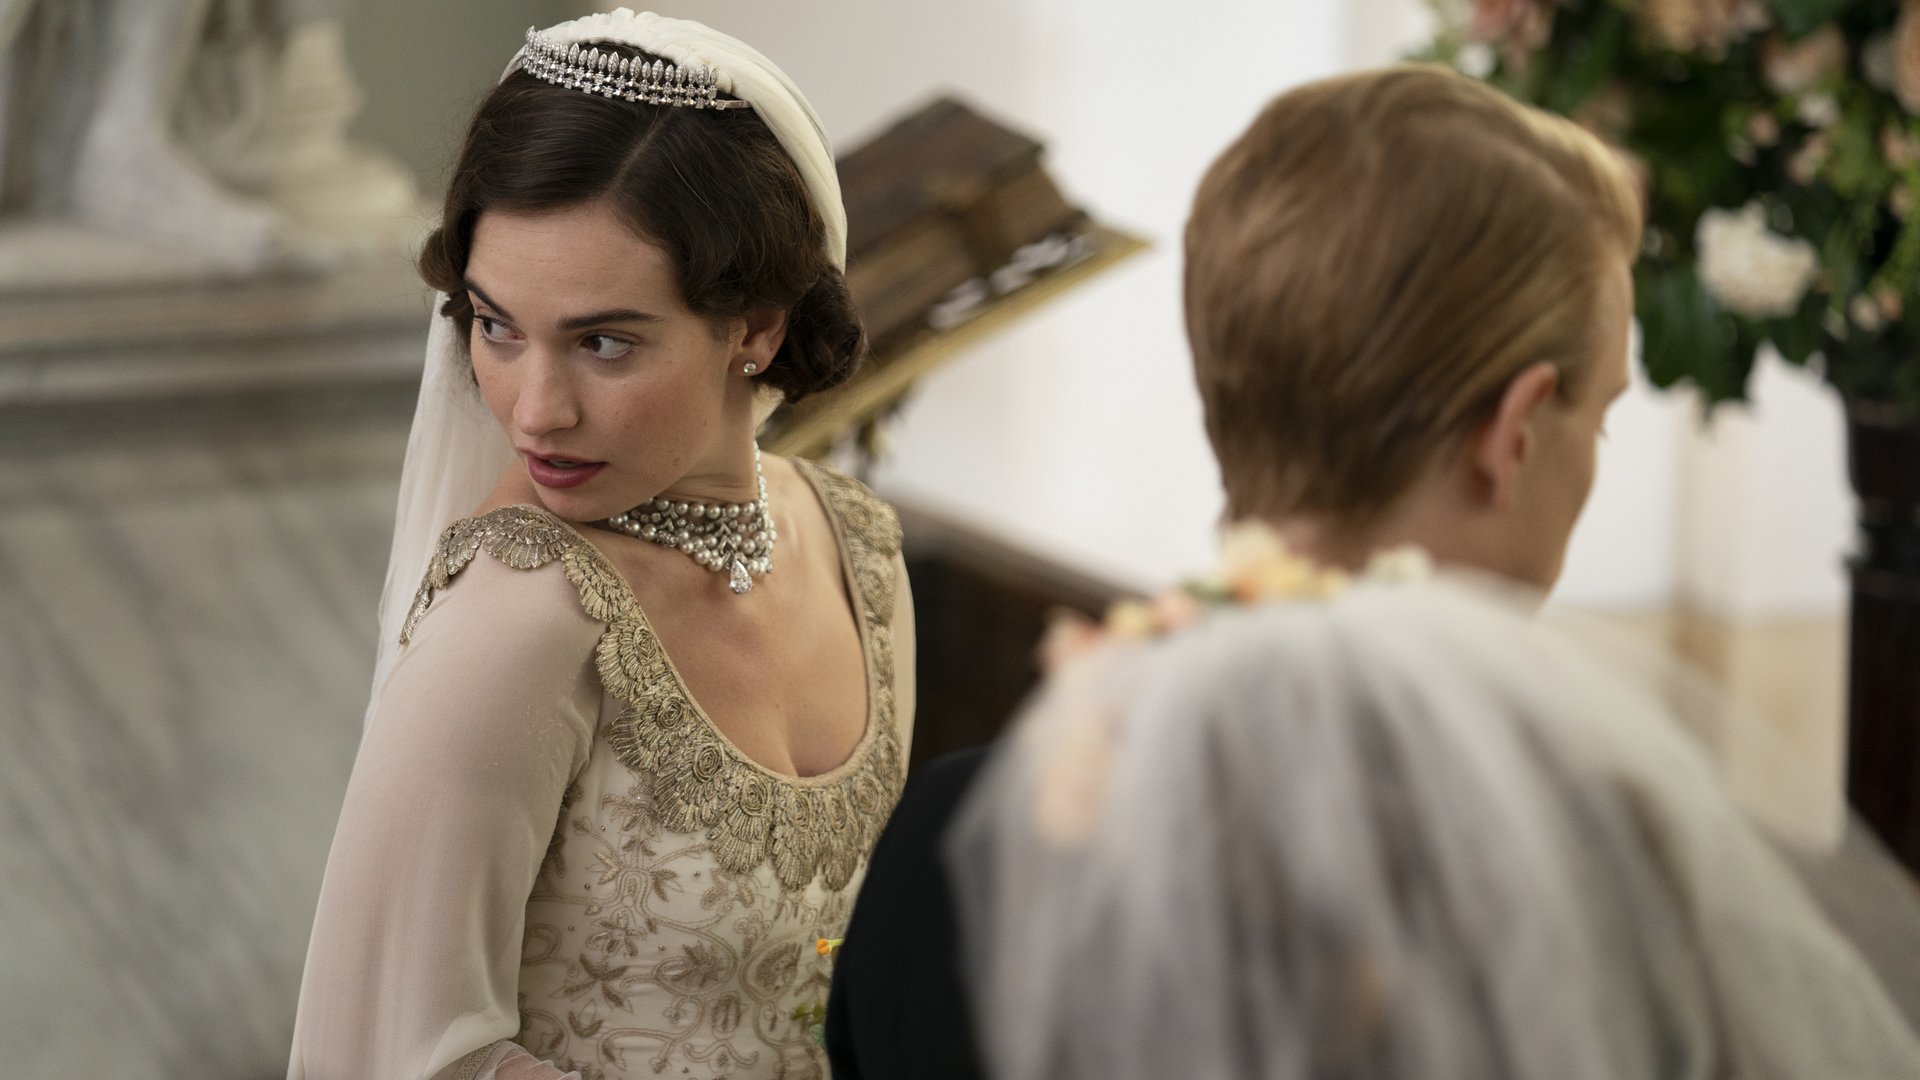 #Ab morgen exklusiv im Stream: Historienserie mit „Downton Abbey“-Star macht „Bridgerton“ Konkurrenz